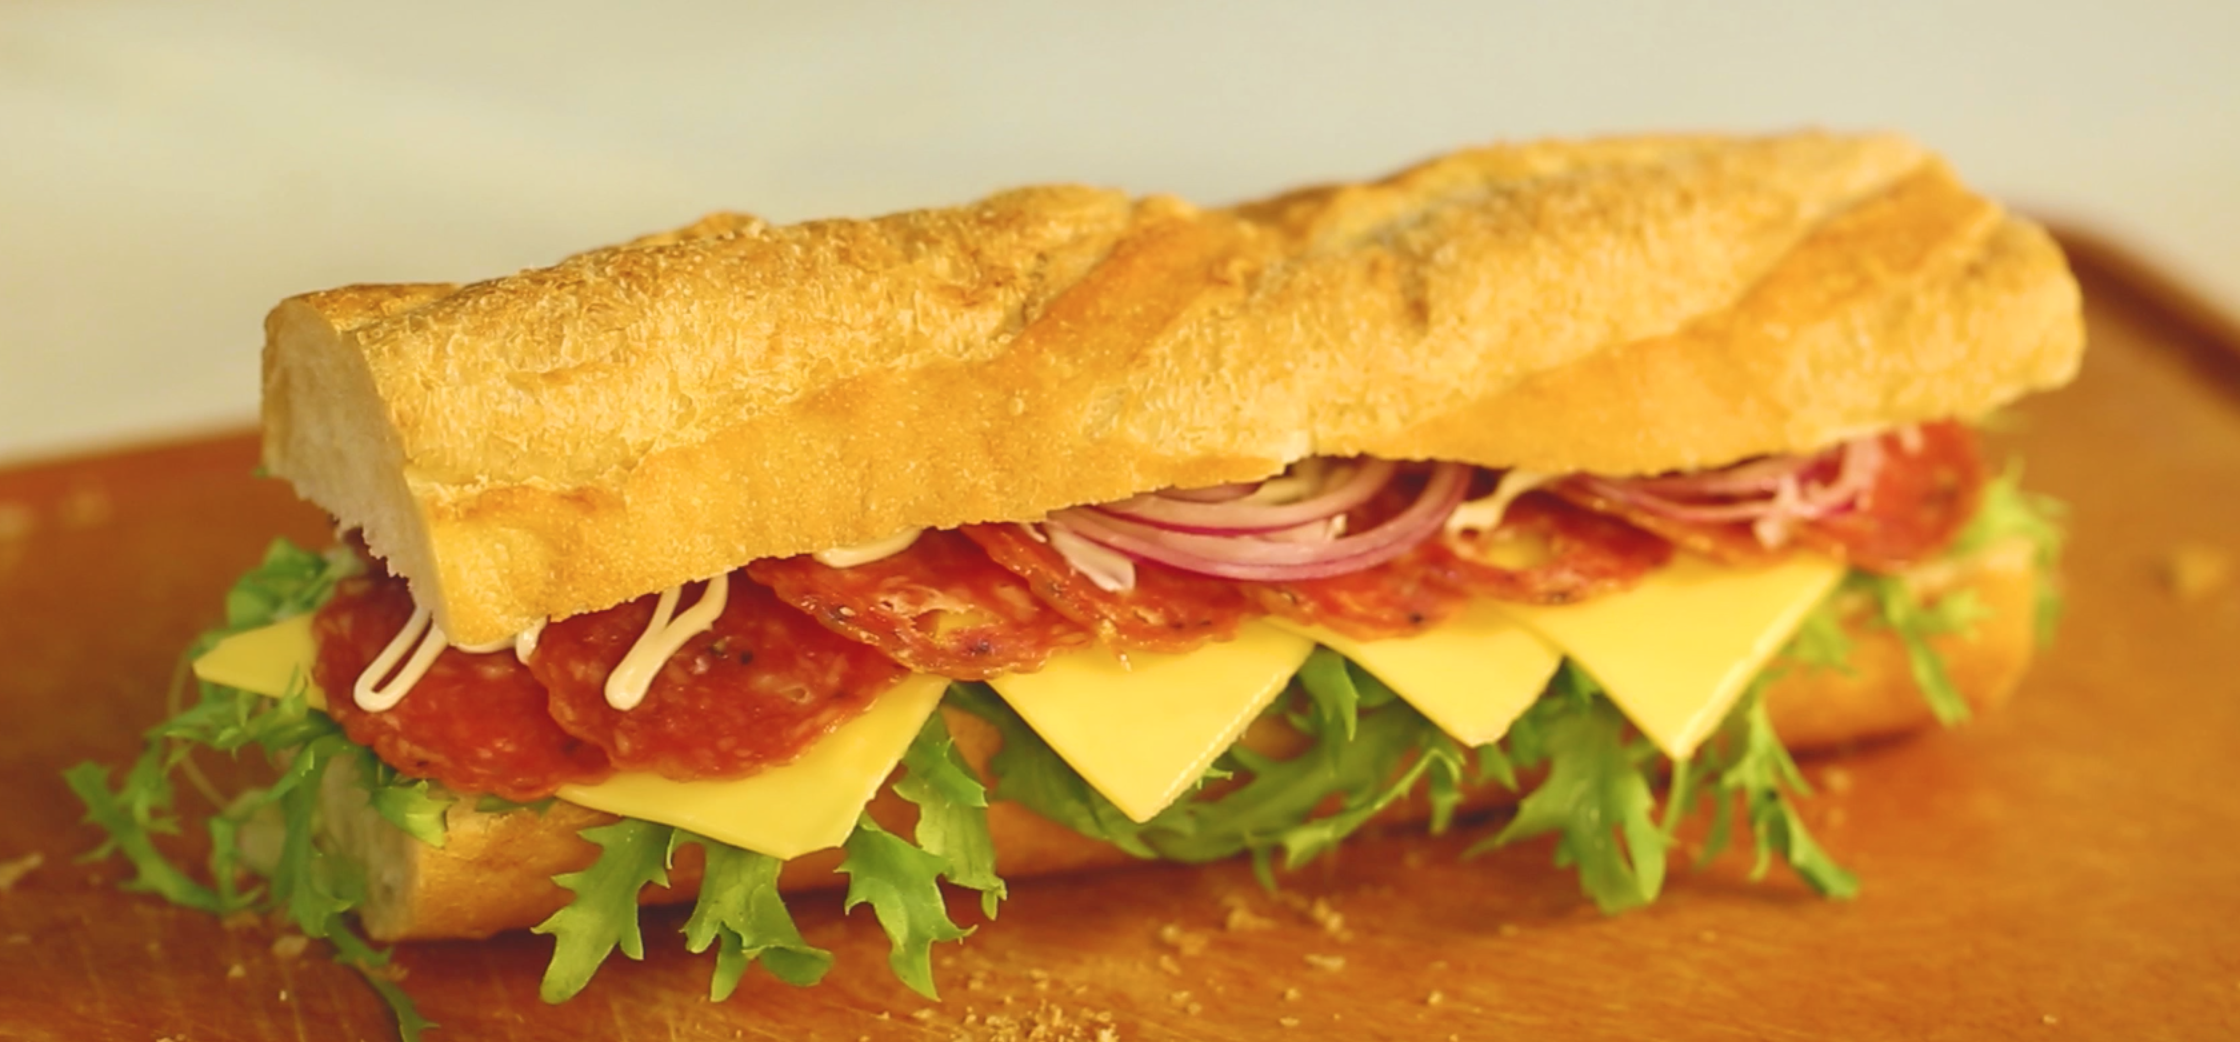 面包“芝心”的拥抱——法式芝心三明治&美式超满足芝心汉堡的做法